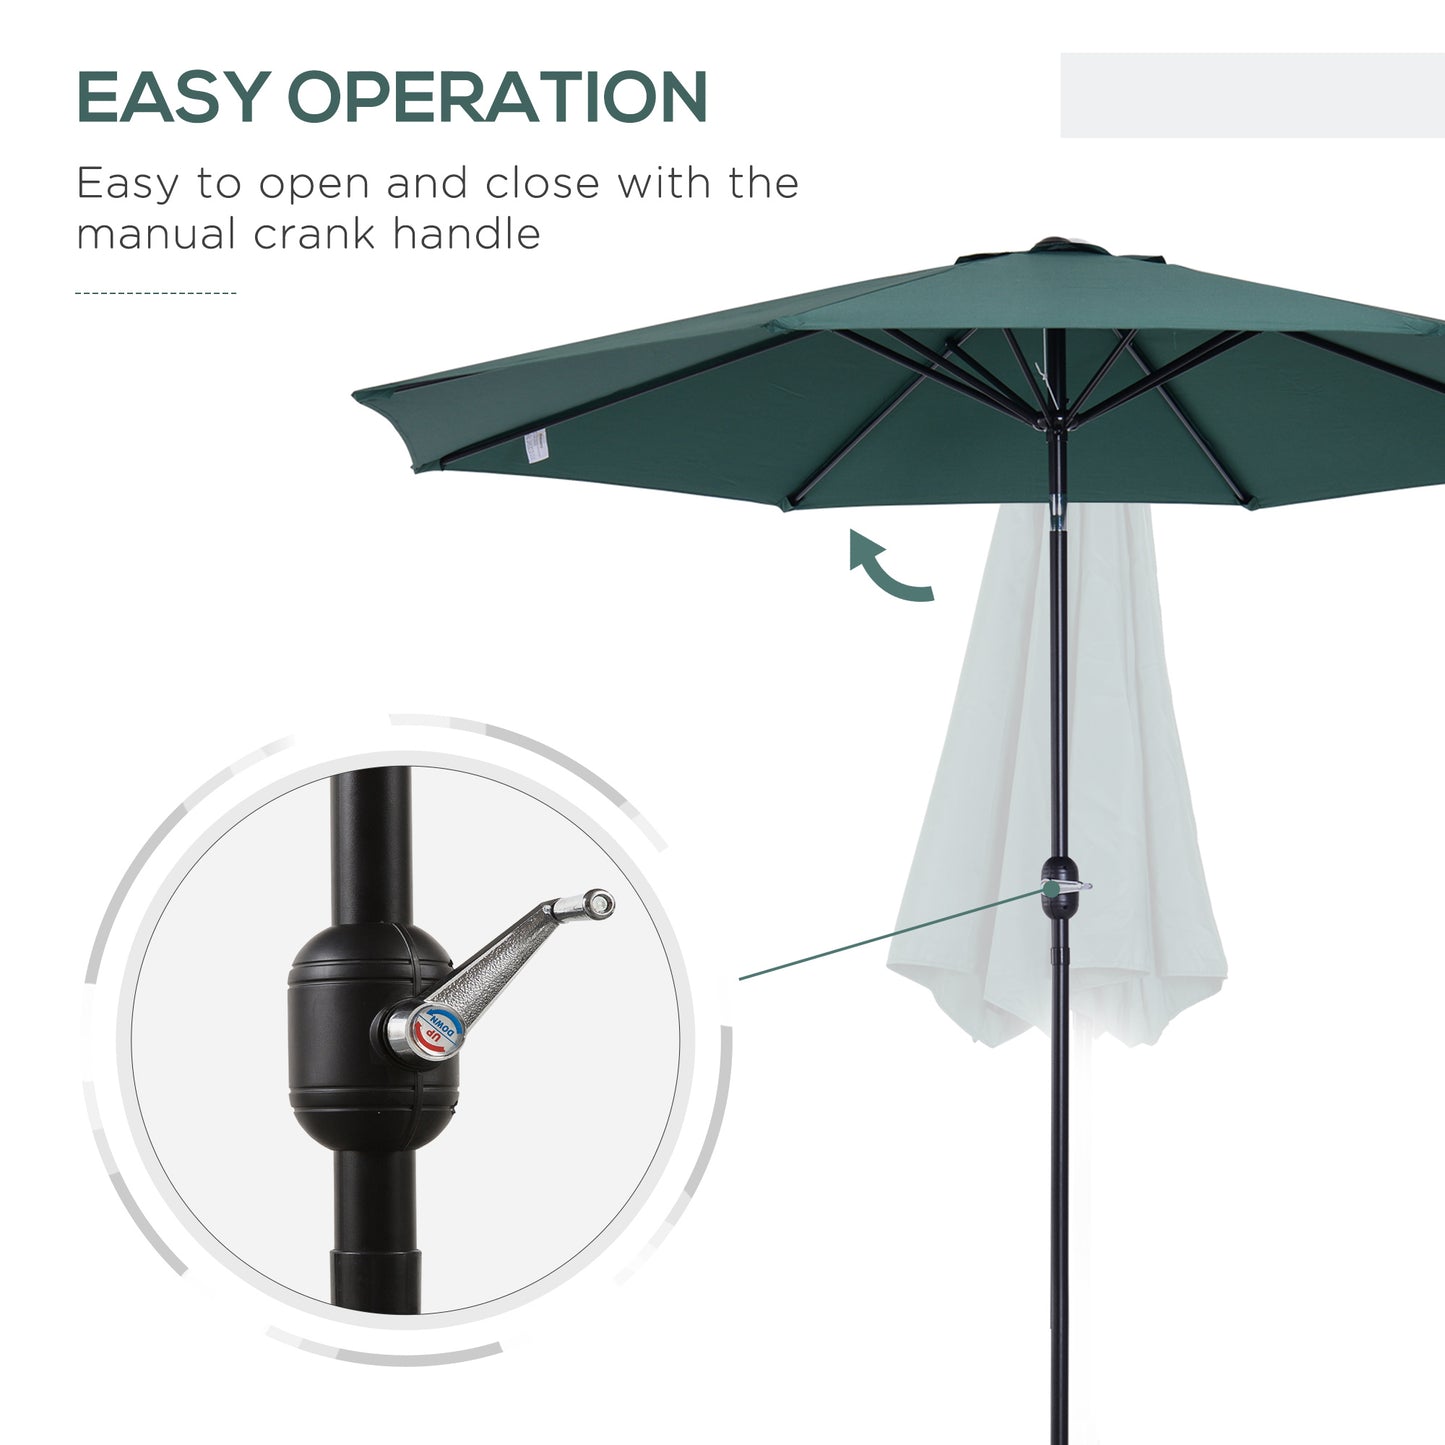 Outsunny 3m Parasol Patio Umbrella, Outdoor Sun Shade with Tilt and Crank Handle for Balcony, Bench, Garden, Green Sunshade Canopy